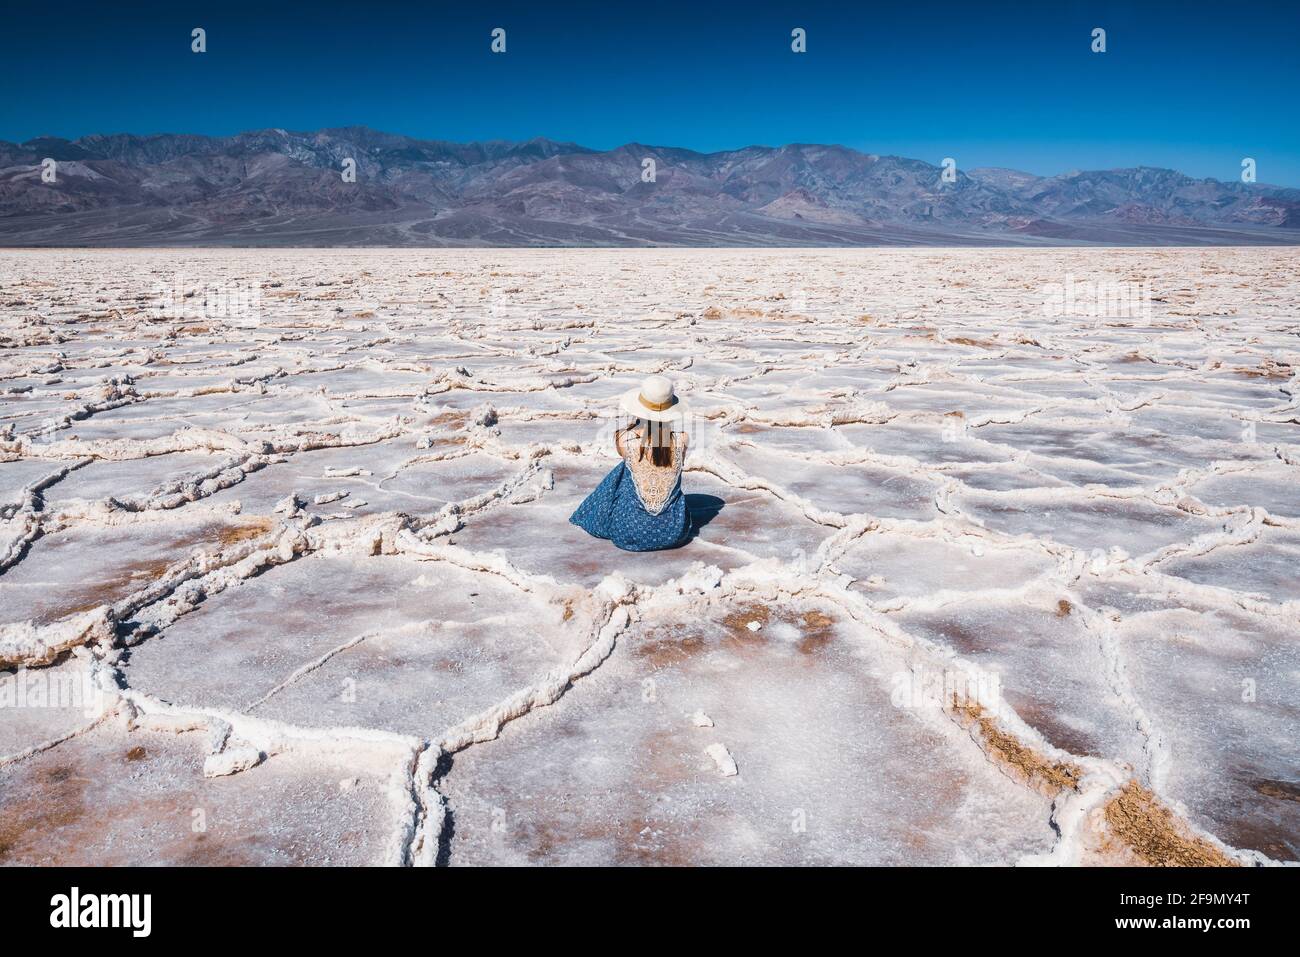 Salt Flats dans le parc national de la Vallée de la mort. Silhouette d'une femme qui profite de la vue. Sentier de randonnée de Badwater Basin, aventure de sentier à travers les plaques de sel bouleversements Banque D'Images